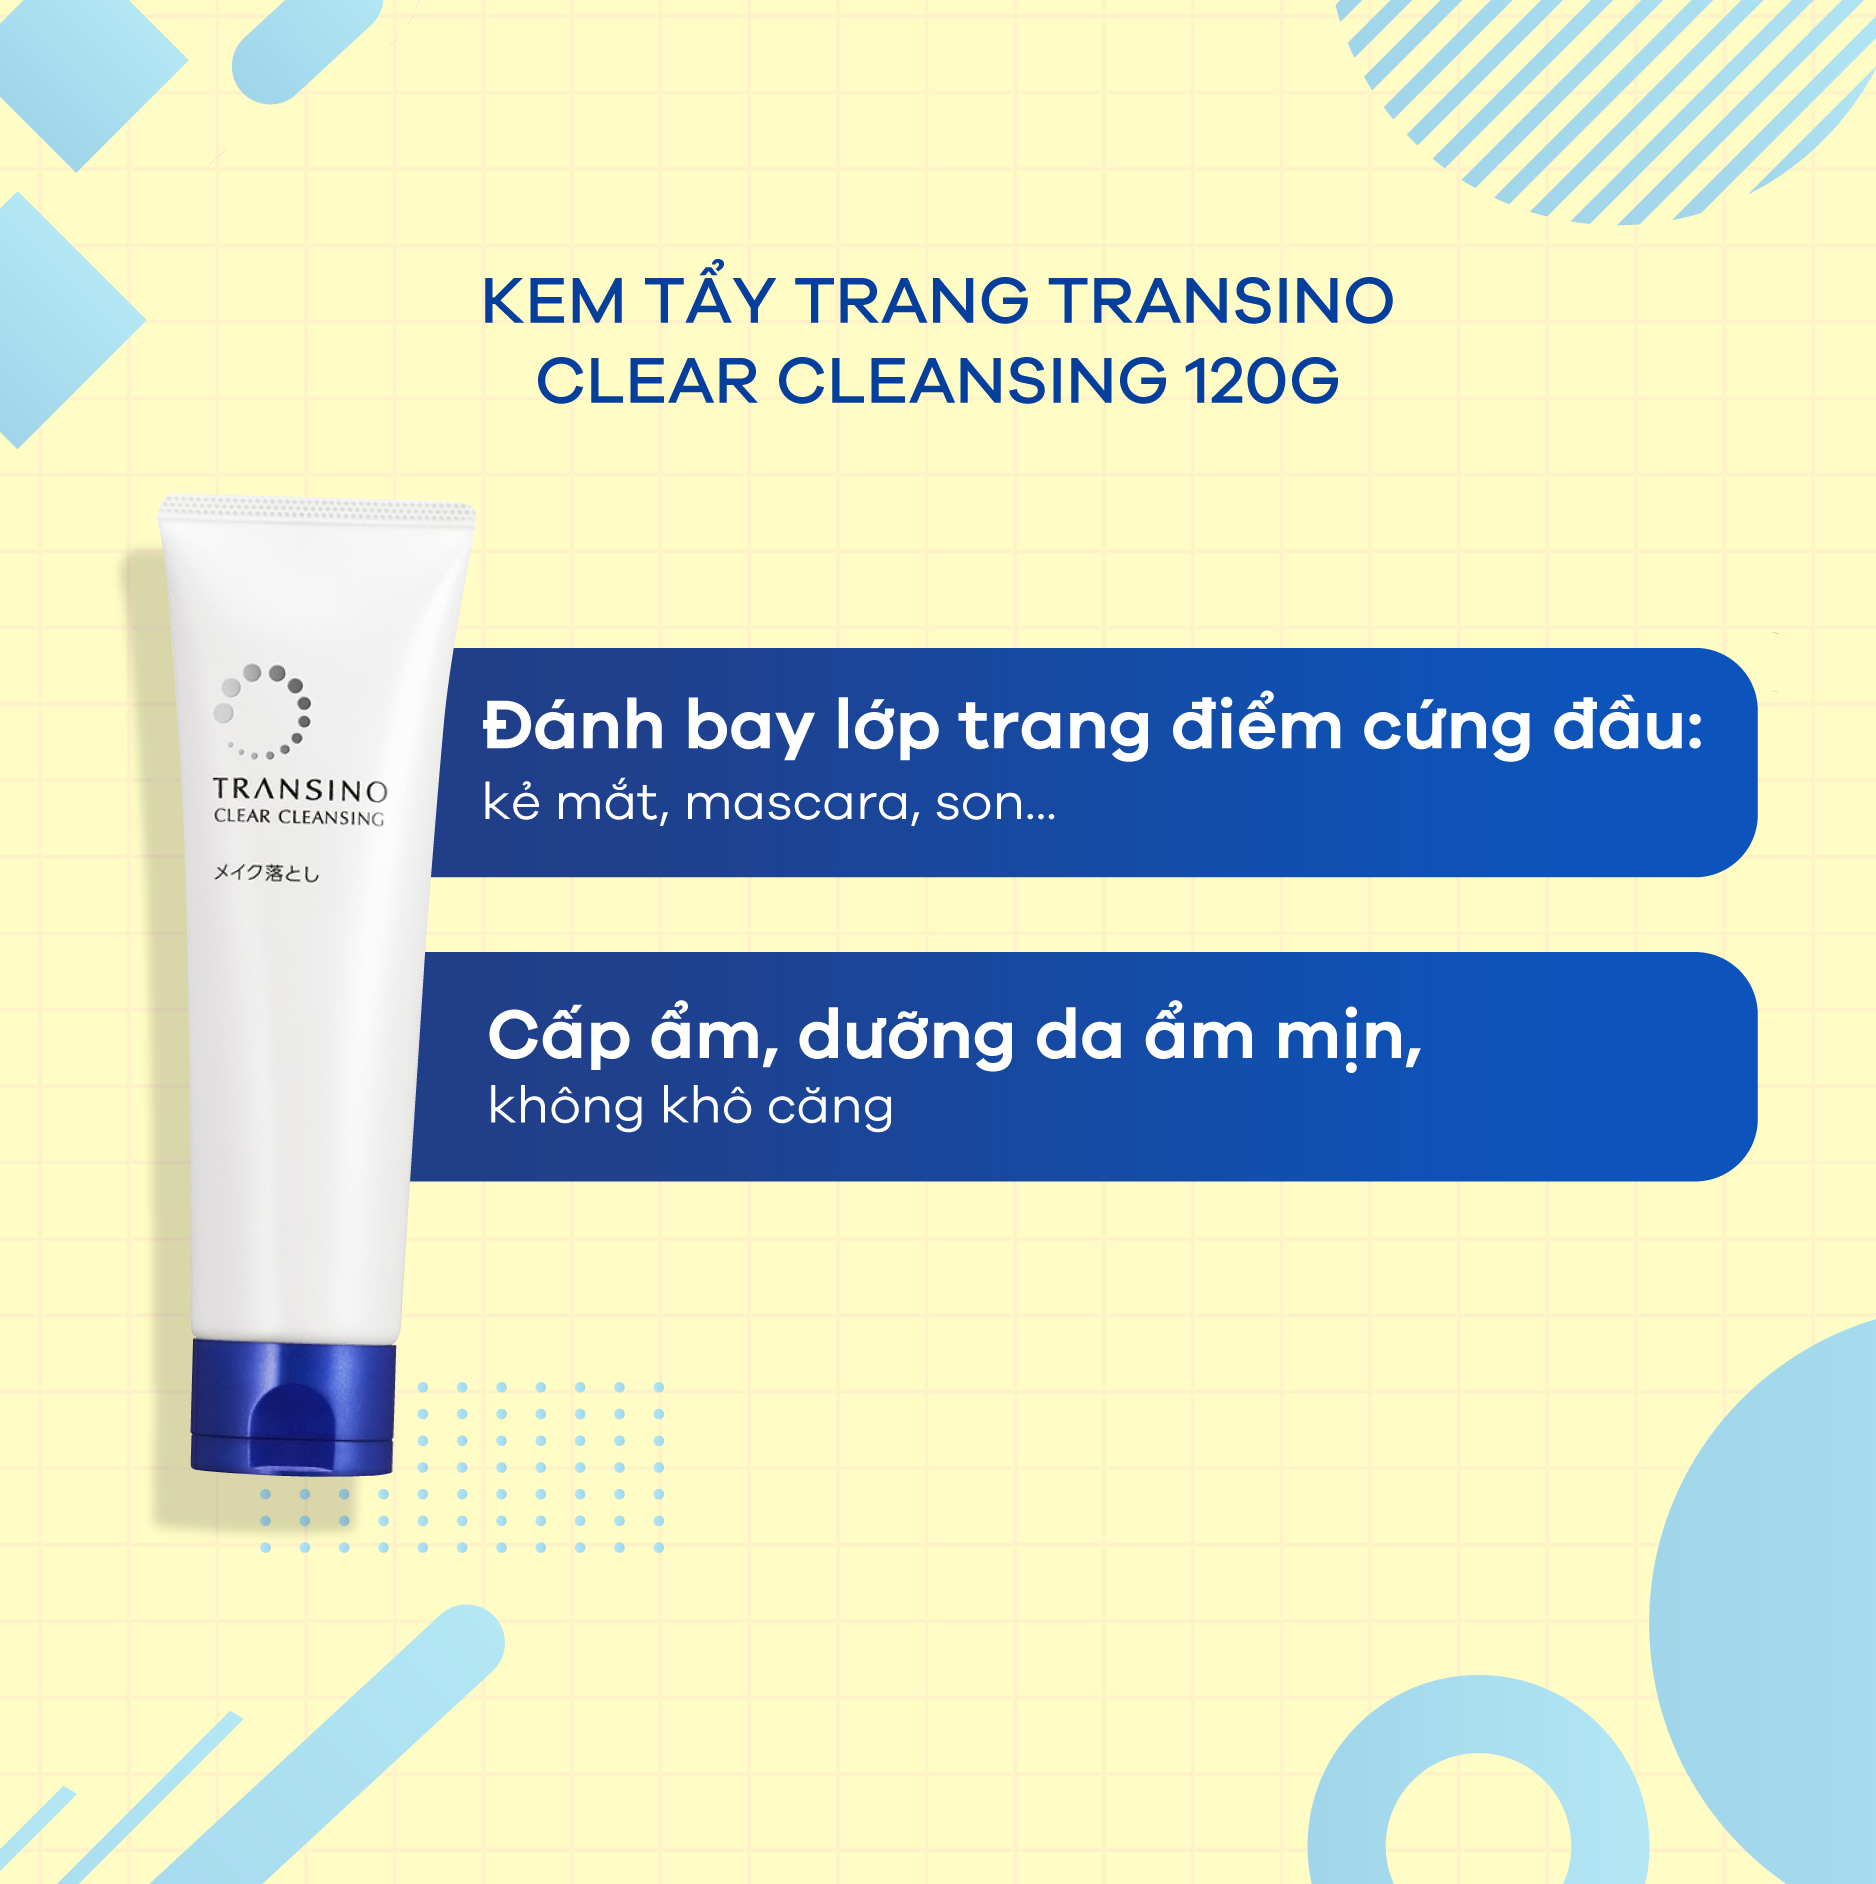 Kem tẩy trang giữ ẩm Transino Clear Cleansing 110g (Nội địa)